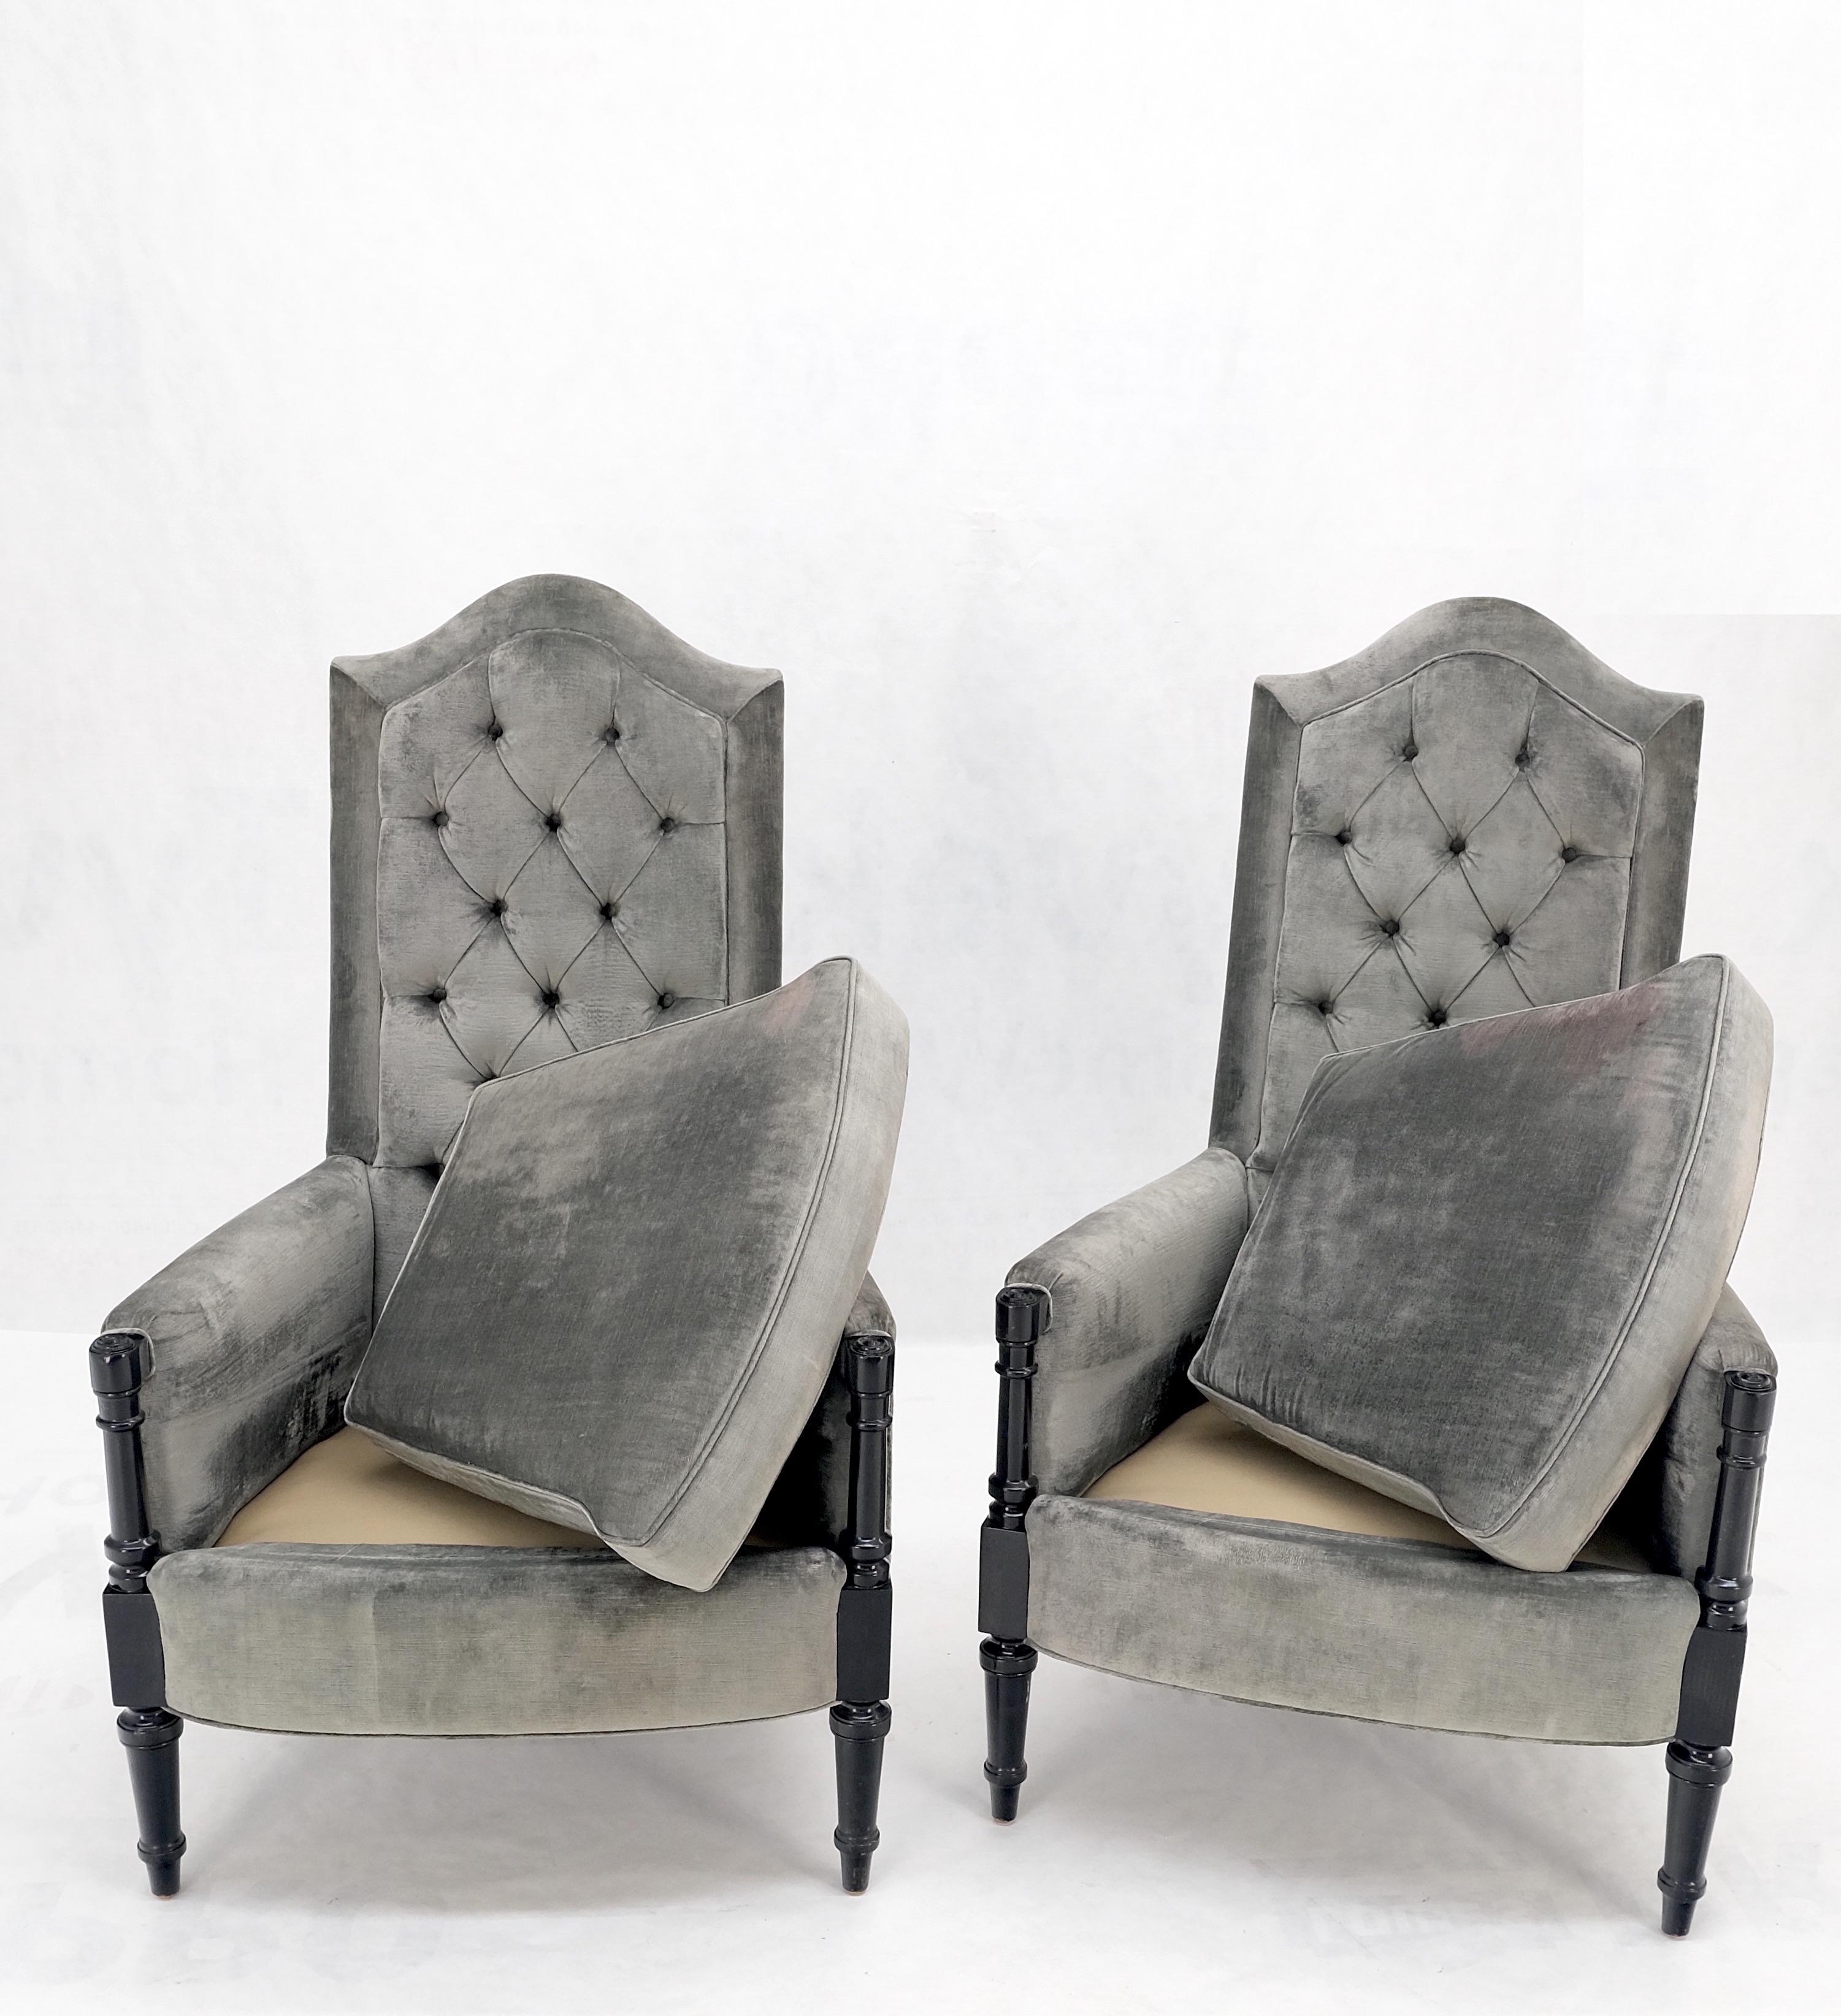 Paar hohe getuftete Rückenlehnen schwarzer Lackrahmen dekorative Sessel Throne.
Super hohe Qualität leichte Verblassung in der Polsterung wie abgebildet.